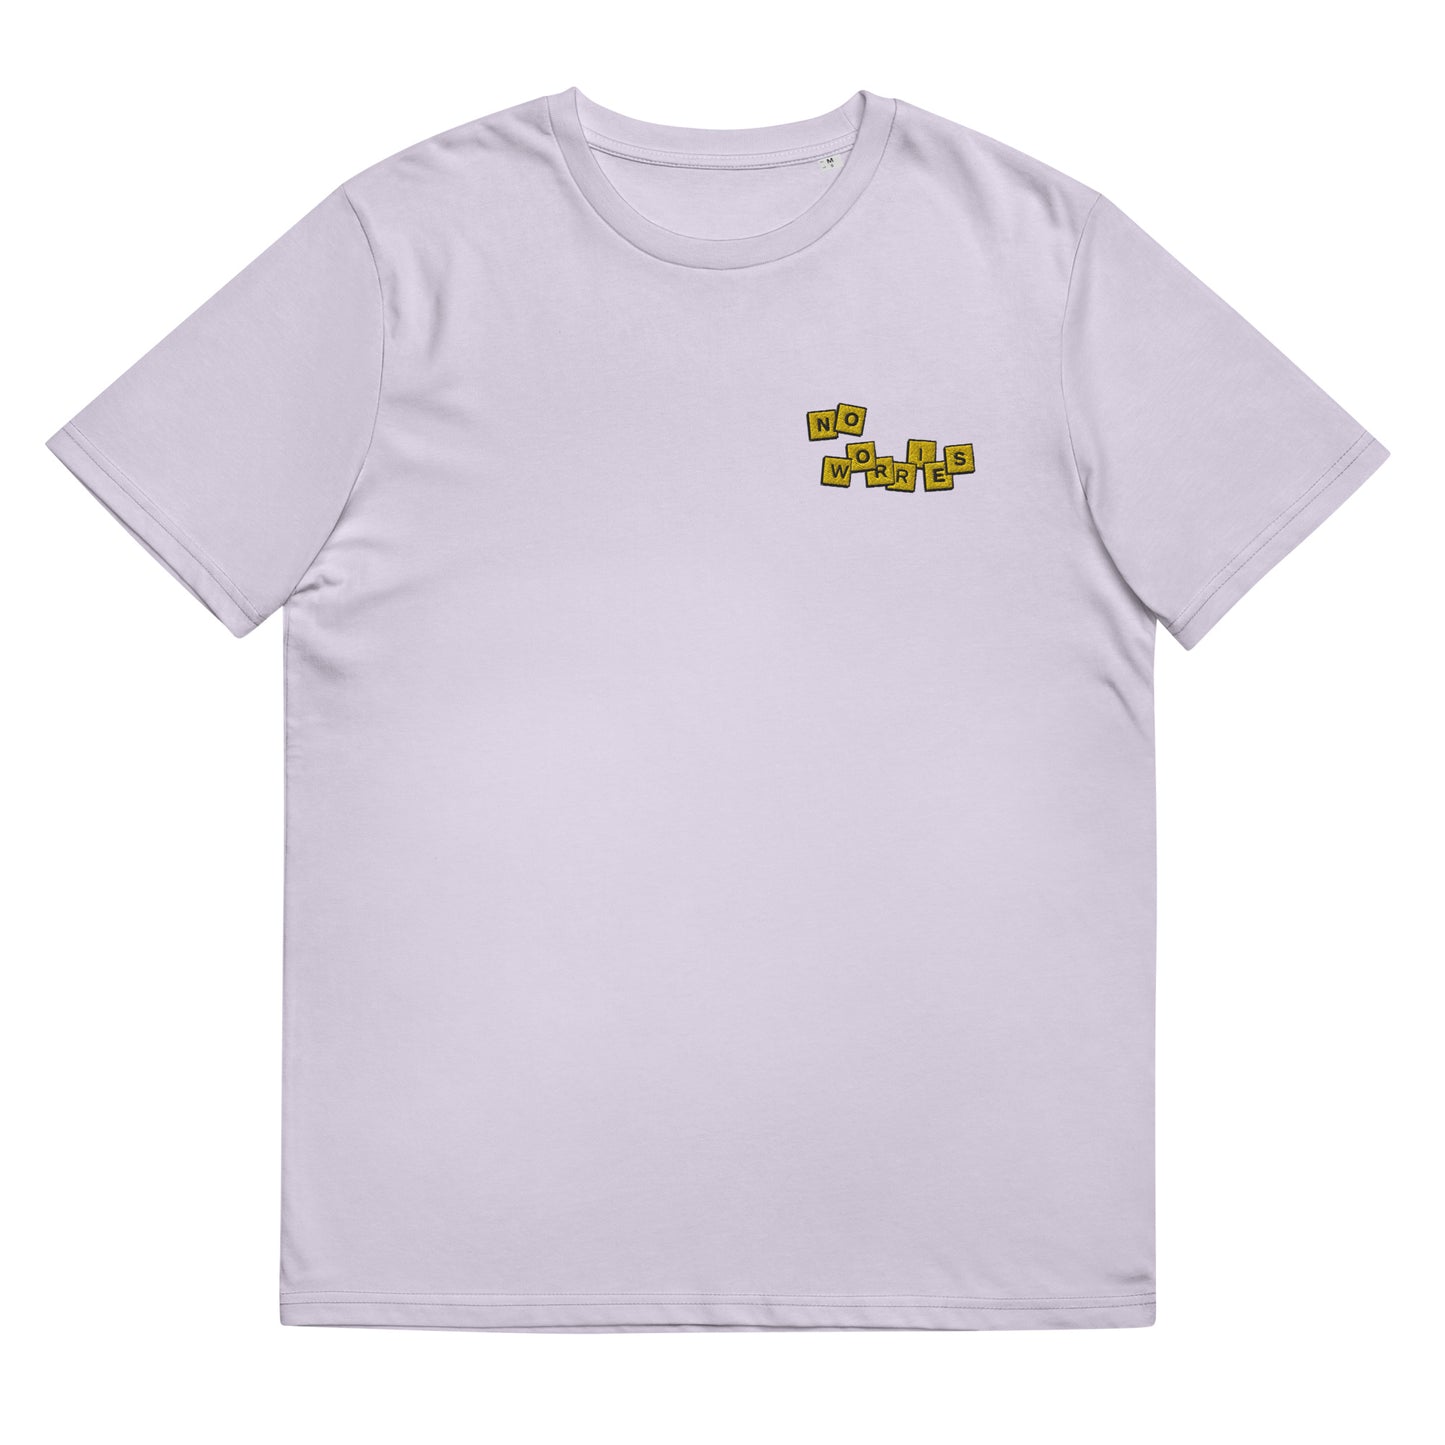 Unisex Organic T-Shirt - No Worries